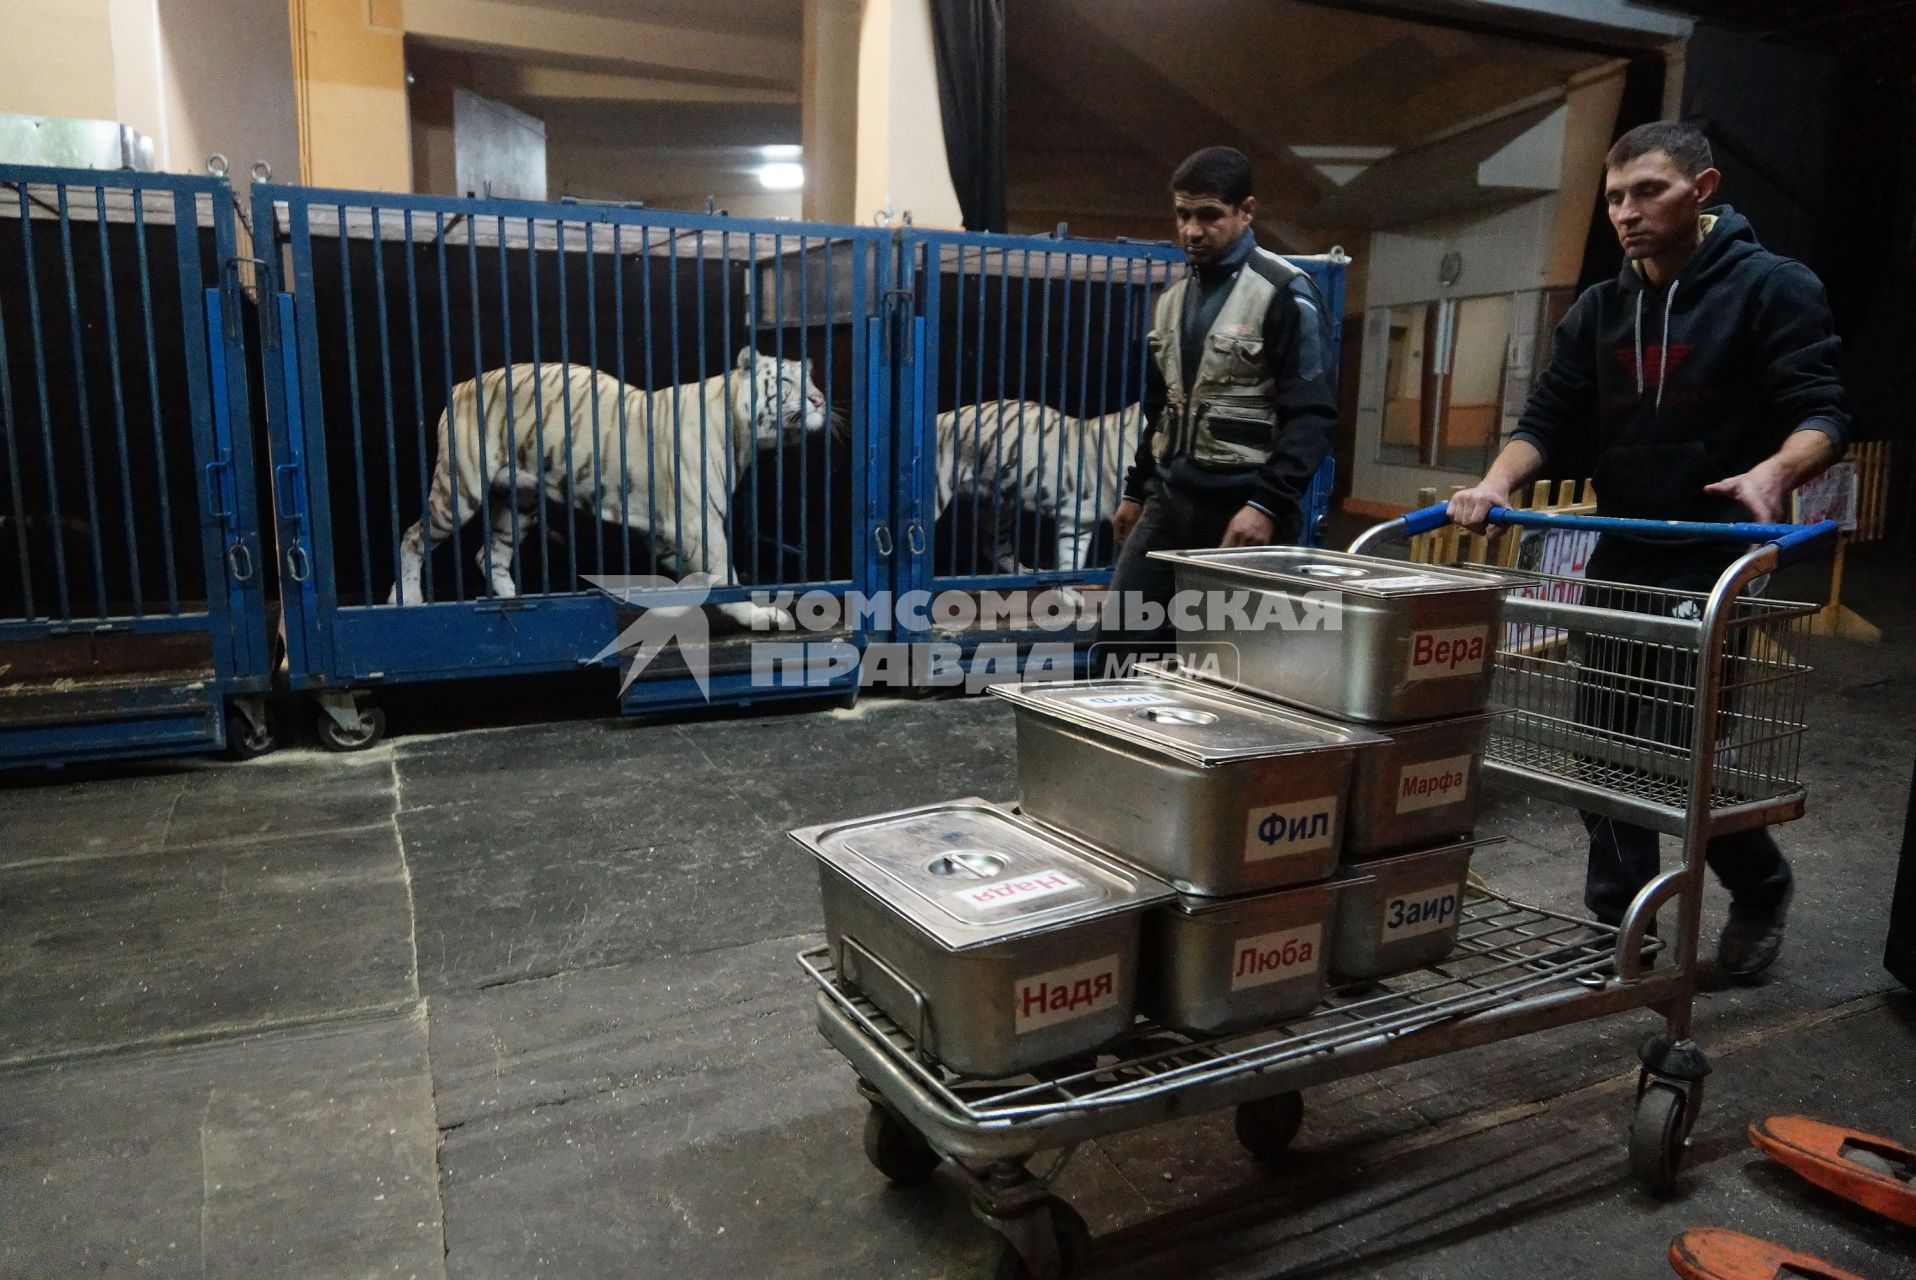 Рабочие везут тележку с контейнерами с едой для белых тигров Сергея Нестерова. Новоя цирковая программа в Екатеринбургском цирке. Сафари цирк.